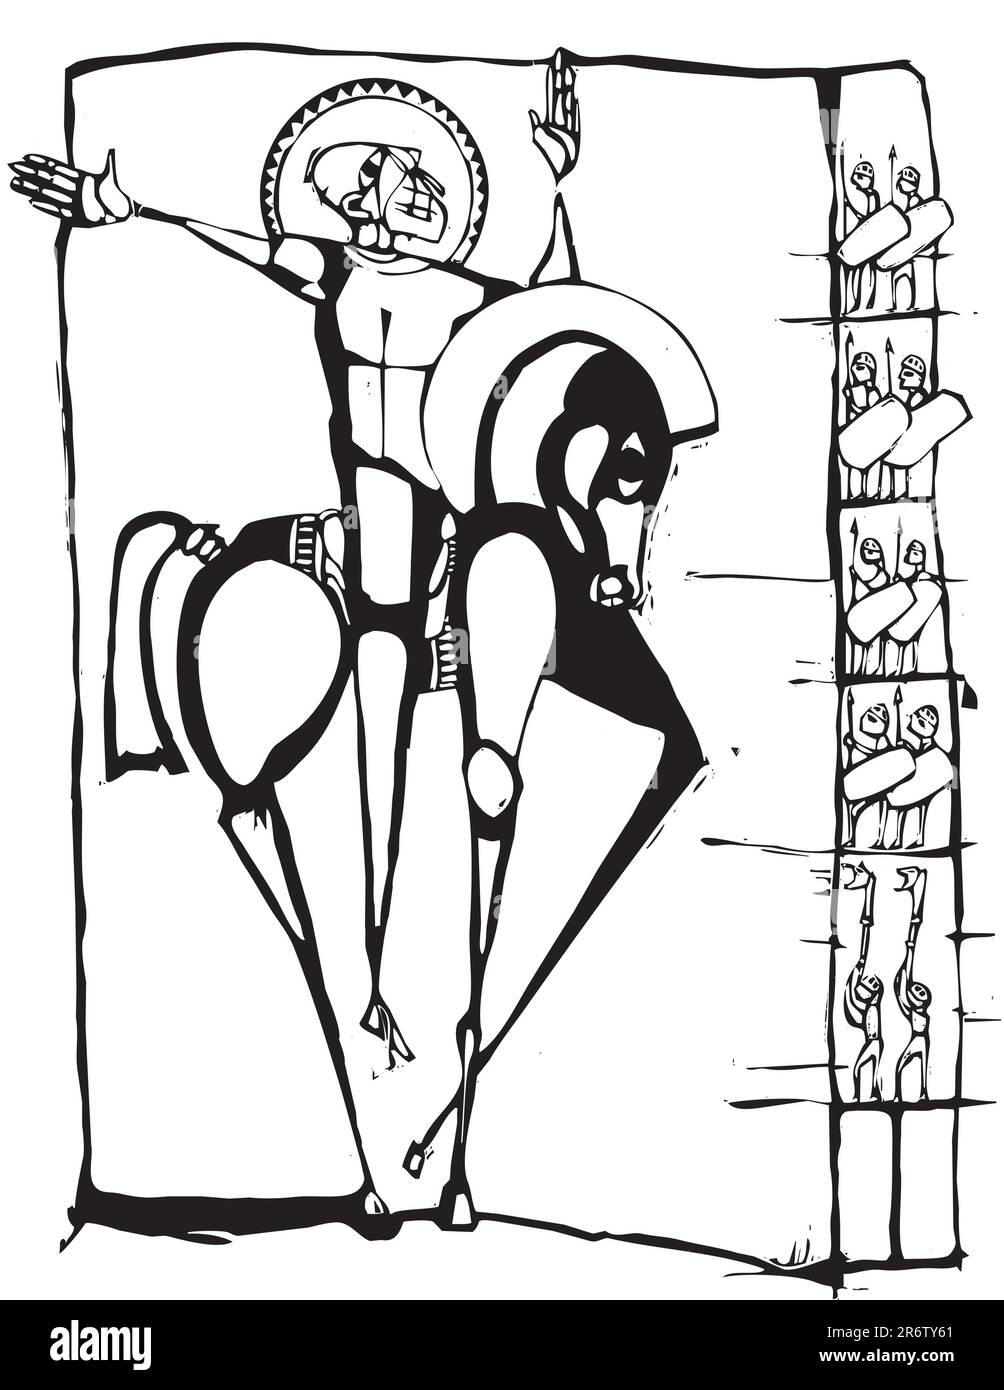 Holzschnitt-stilisiertes Bild eines Mannes auf einem Pferd. Stock Vektor